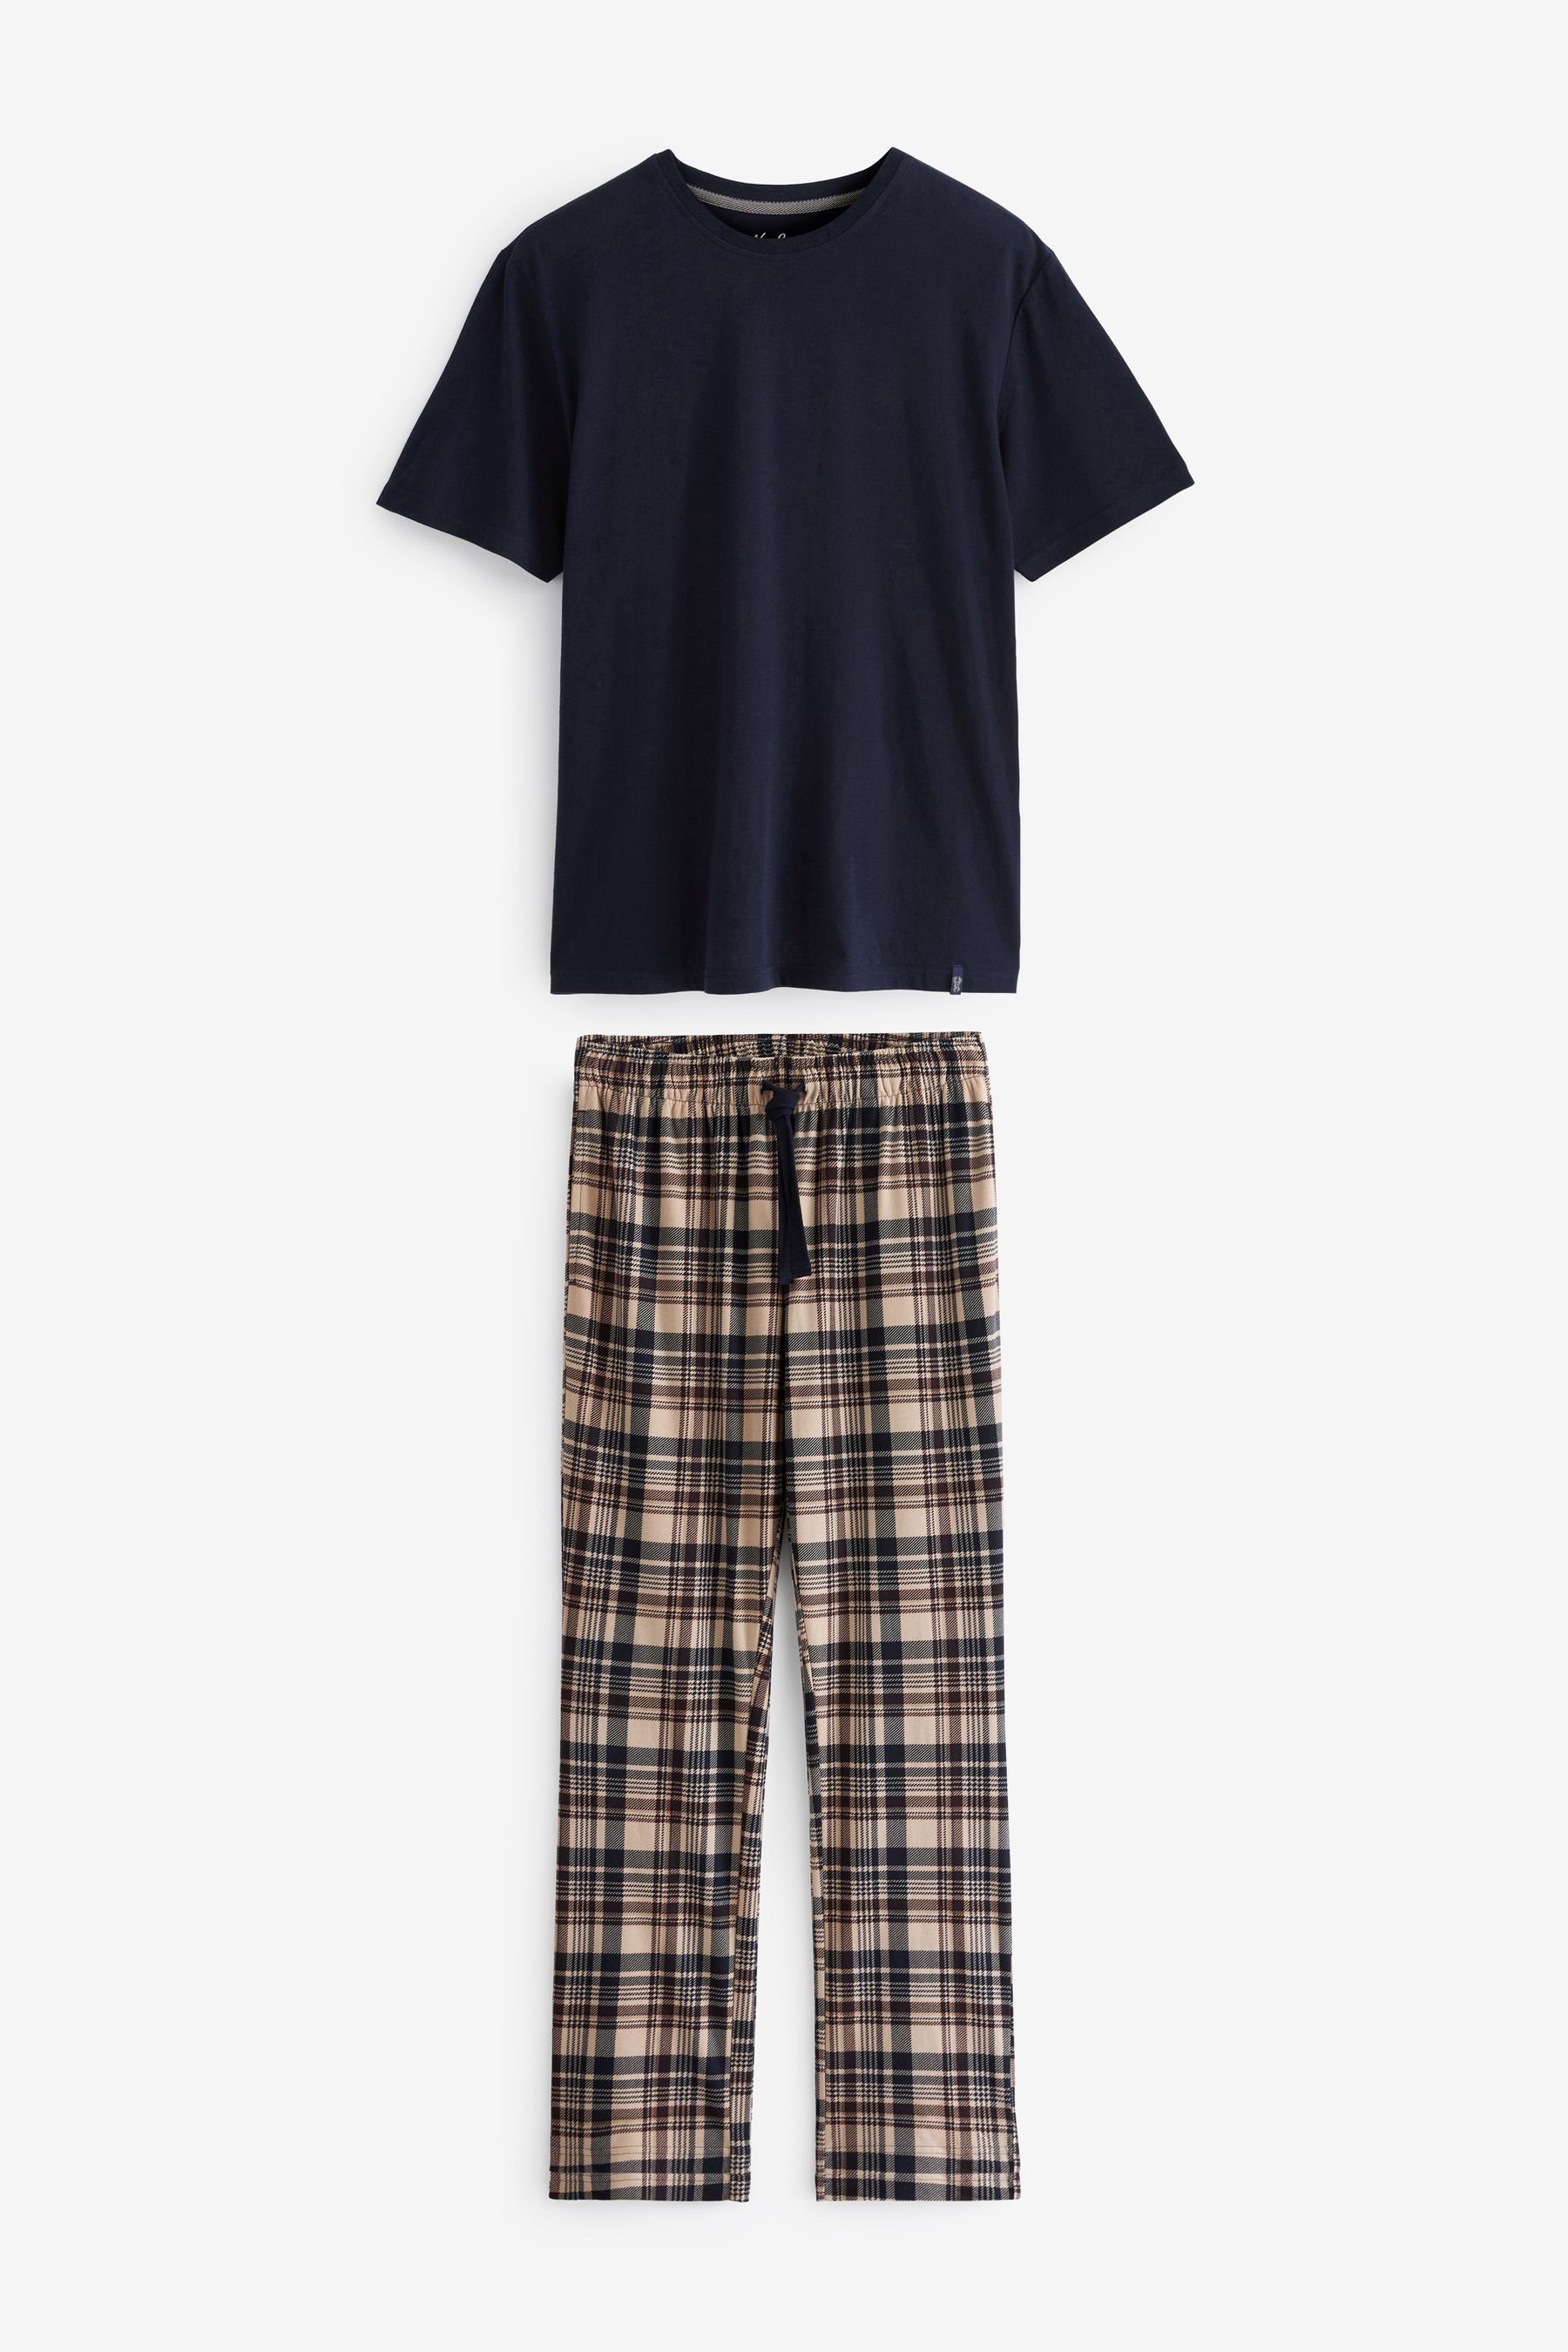 Next Pyjama Bequemer Motionflex Schlafanzug (2 tlg) Navy/Tan Check